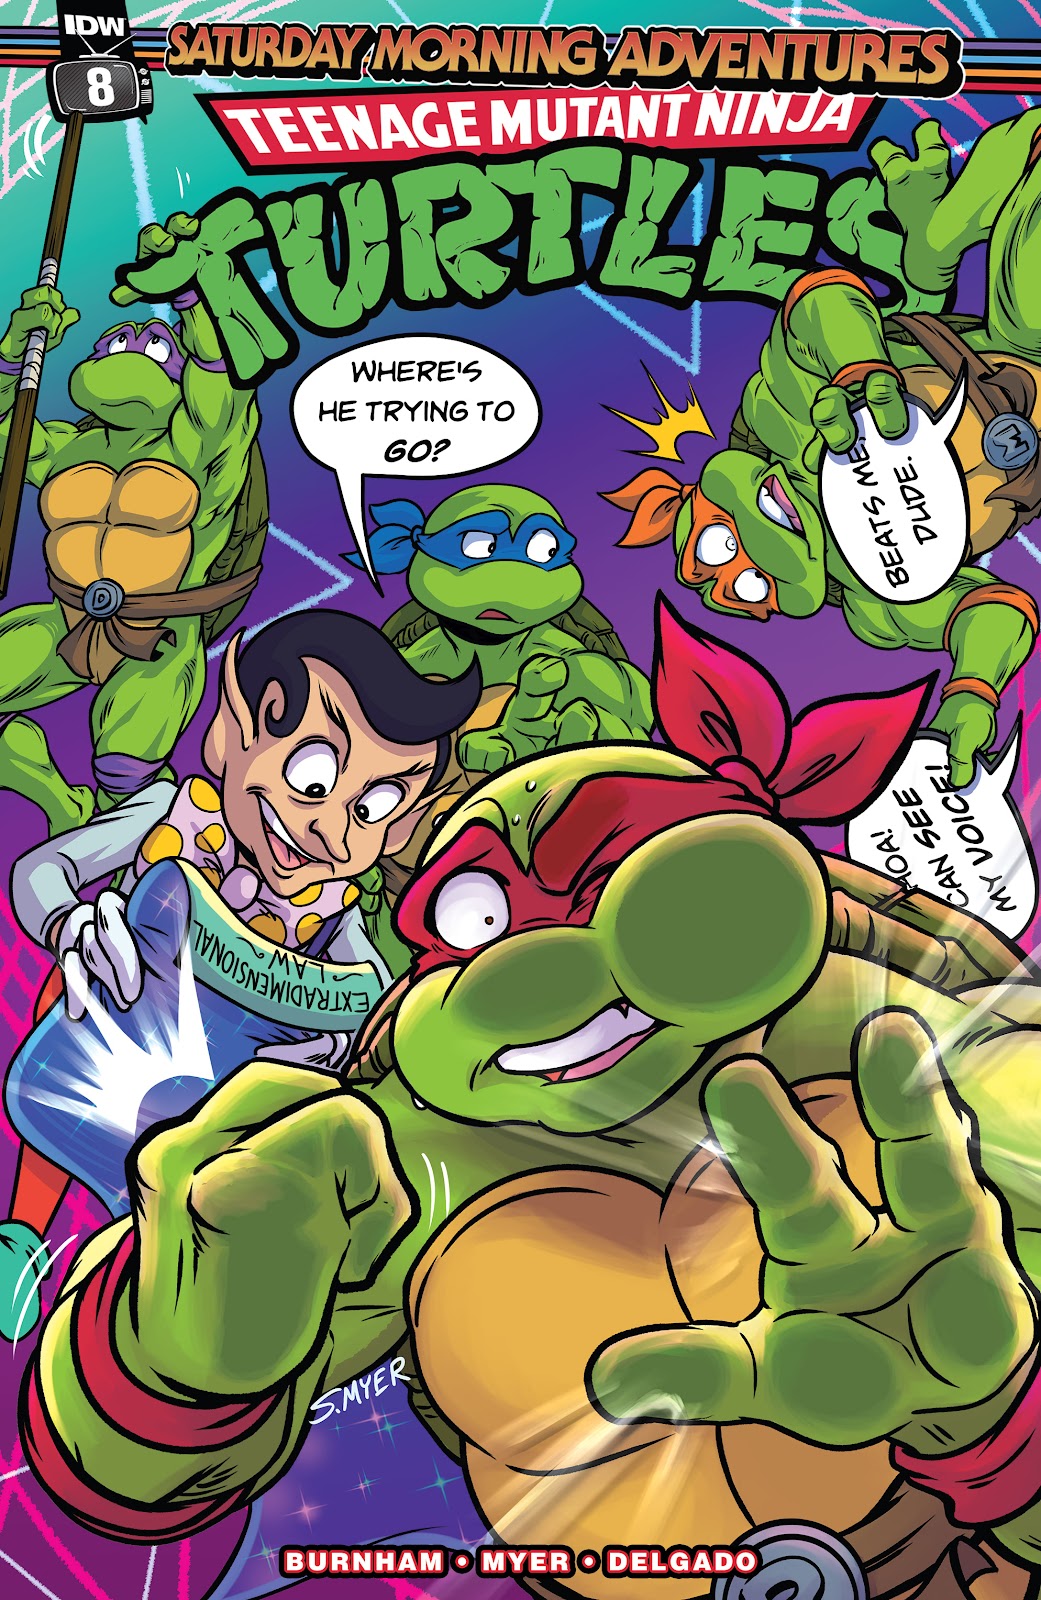 Teenage Mutant Ninja Turtles: Saturday Morning Adventures Continued issue 8 - Page 1